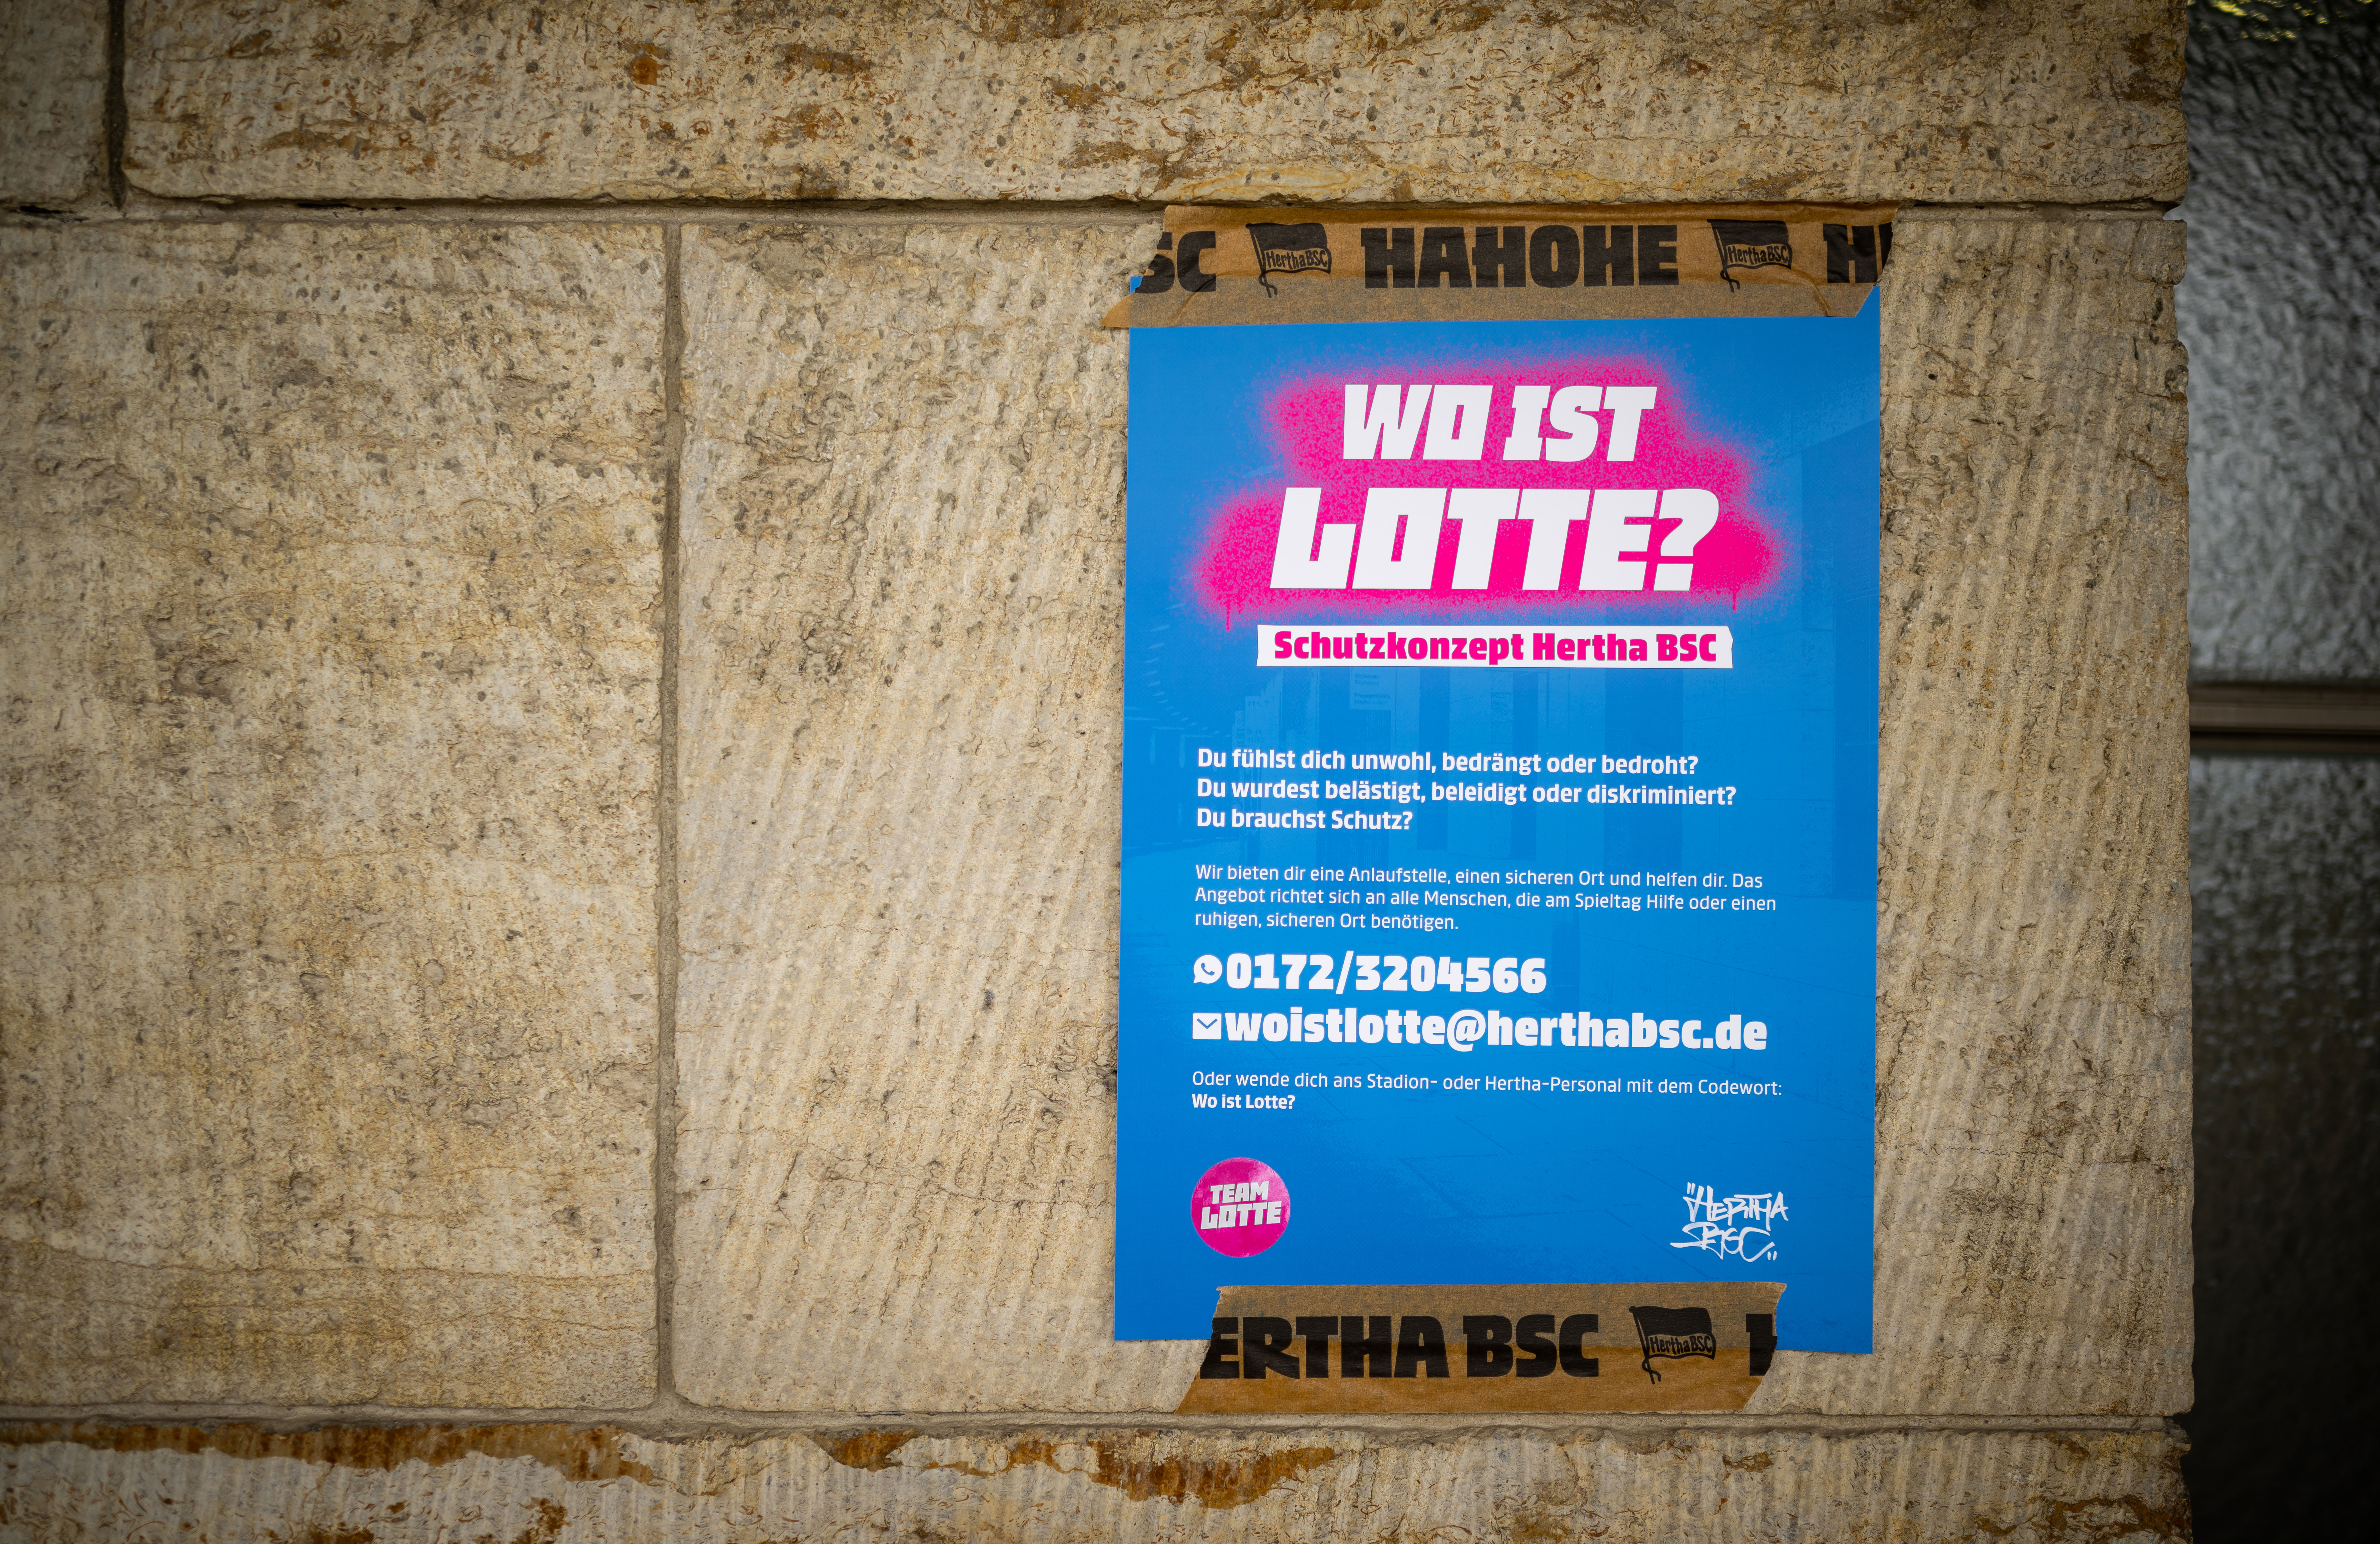 Ein Infoplakat zu unserem Schutzkonzept "Wo ist Lotte?" im Berliner Olympiastadion.